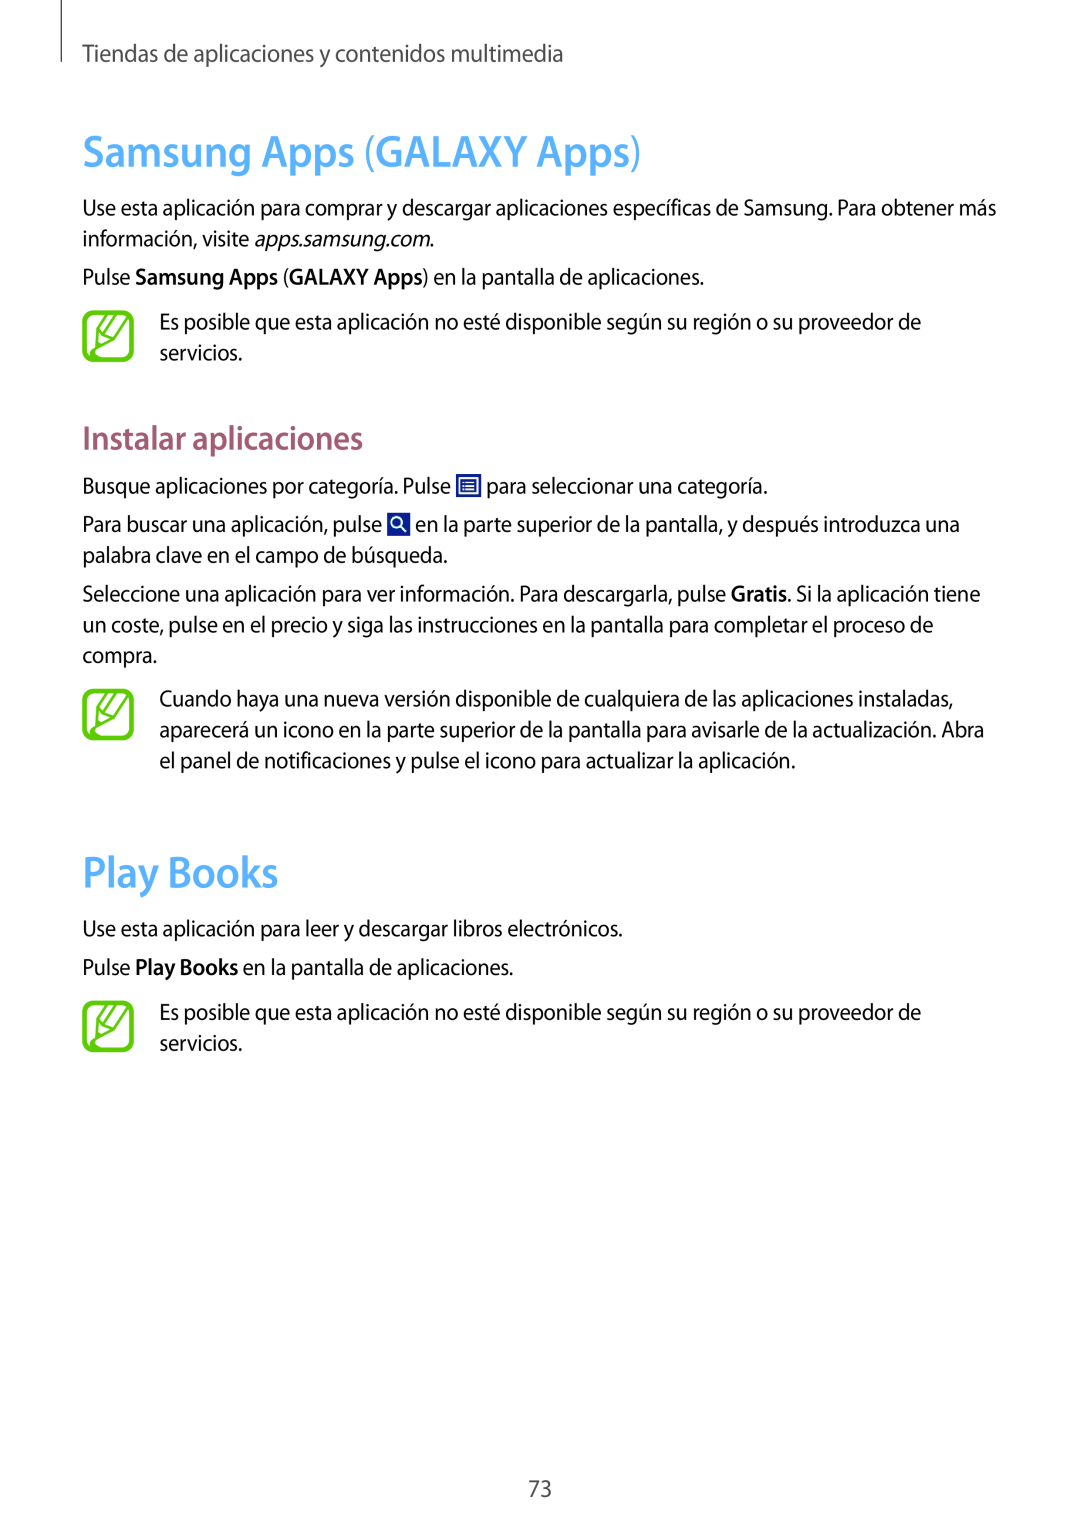 Samsung GT-P5200MKAPHE manual Samsung Apps GALAXY Apps, Play Books, Tiendas de aplicaciones y contenidos multimedia 